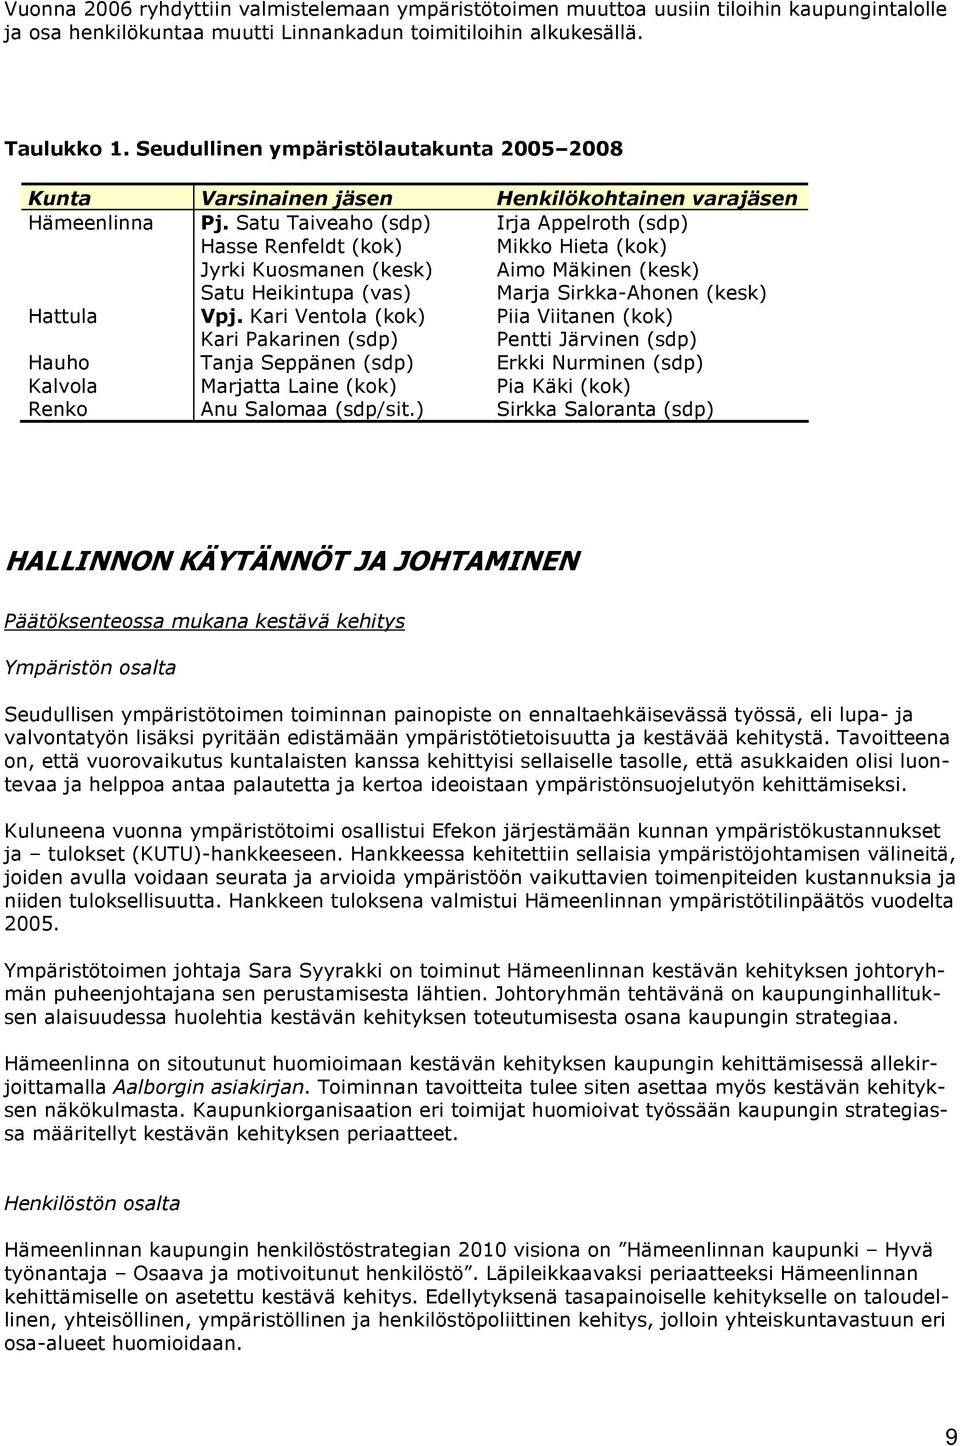 Satu Taiveah (sdp) Irja Appelrth (sdp) Hasse Renfeldt (kk) Mikk Hieta (kk) Jyrki Kusmanen (kesk) Aim Mäkinen (kesk) Satu Heikintupa (vas) Marja Sirkka-Ahnen (kesk) Hattula Vpj.